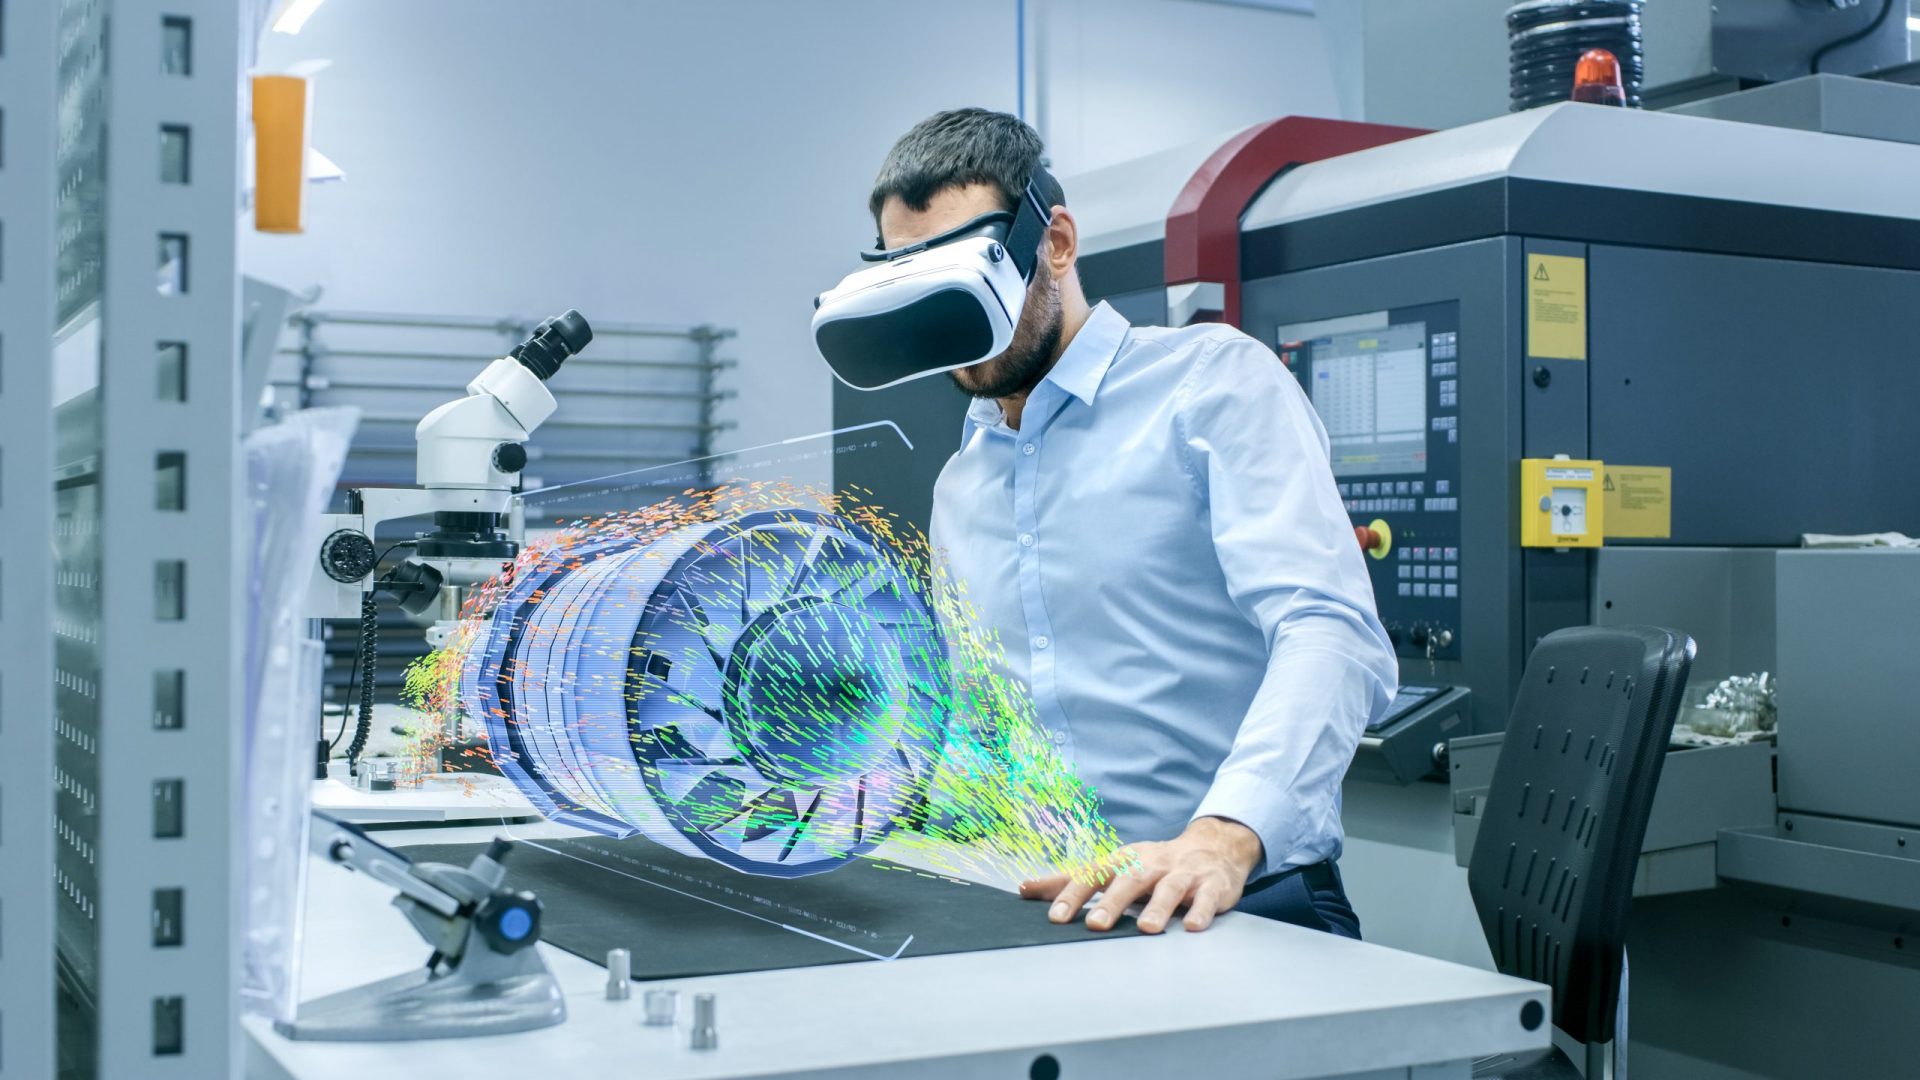 Der Chefingenieur in der Fabrik trägt eine VR-Brille und entwirft eine Turbine auf dem holografischen Projektionstisch. Futuristisches Design einer virtuellen Mixed-Reality-Anwendung.